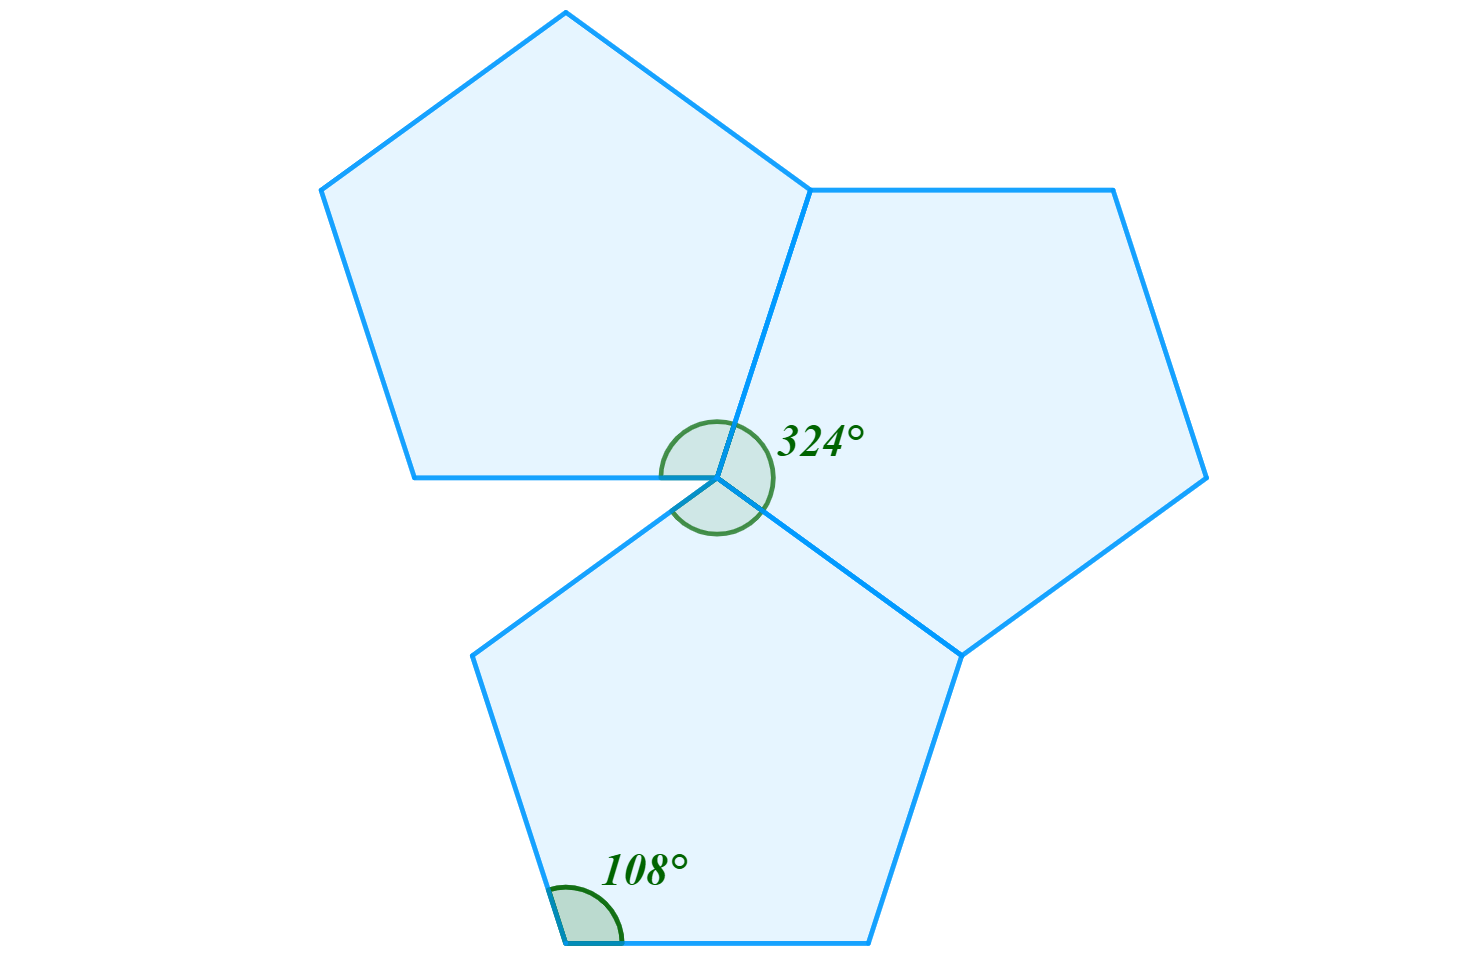 Pravidelný mnohostěn je tvořen pravidelnými pětiúhelníky